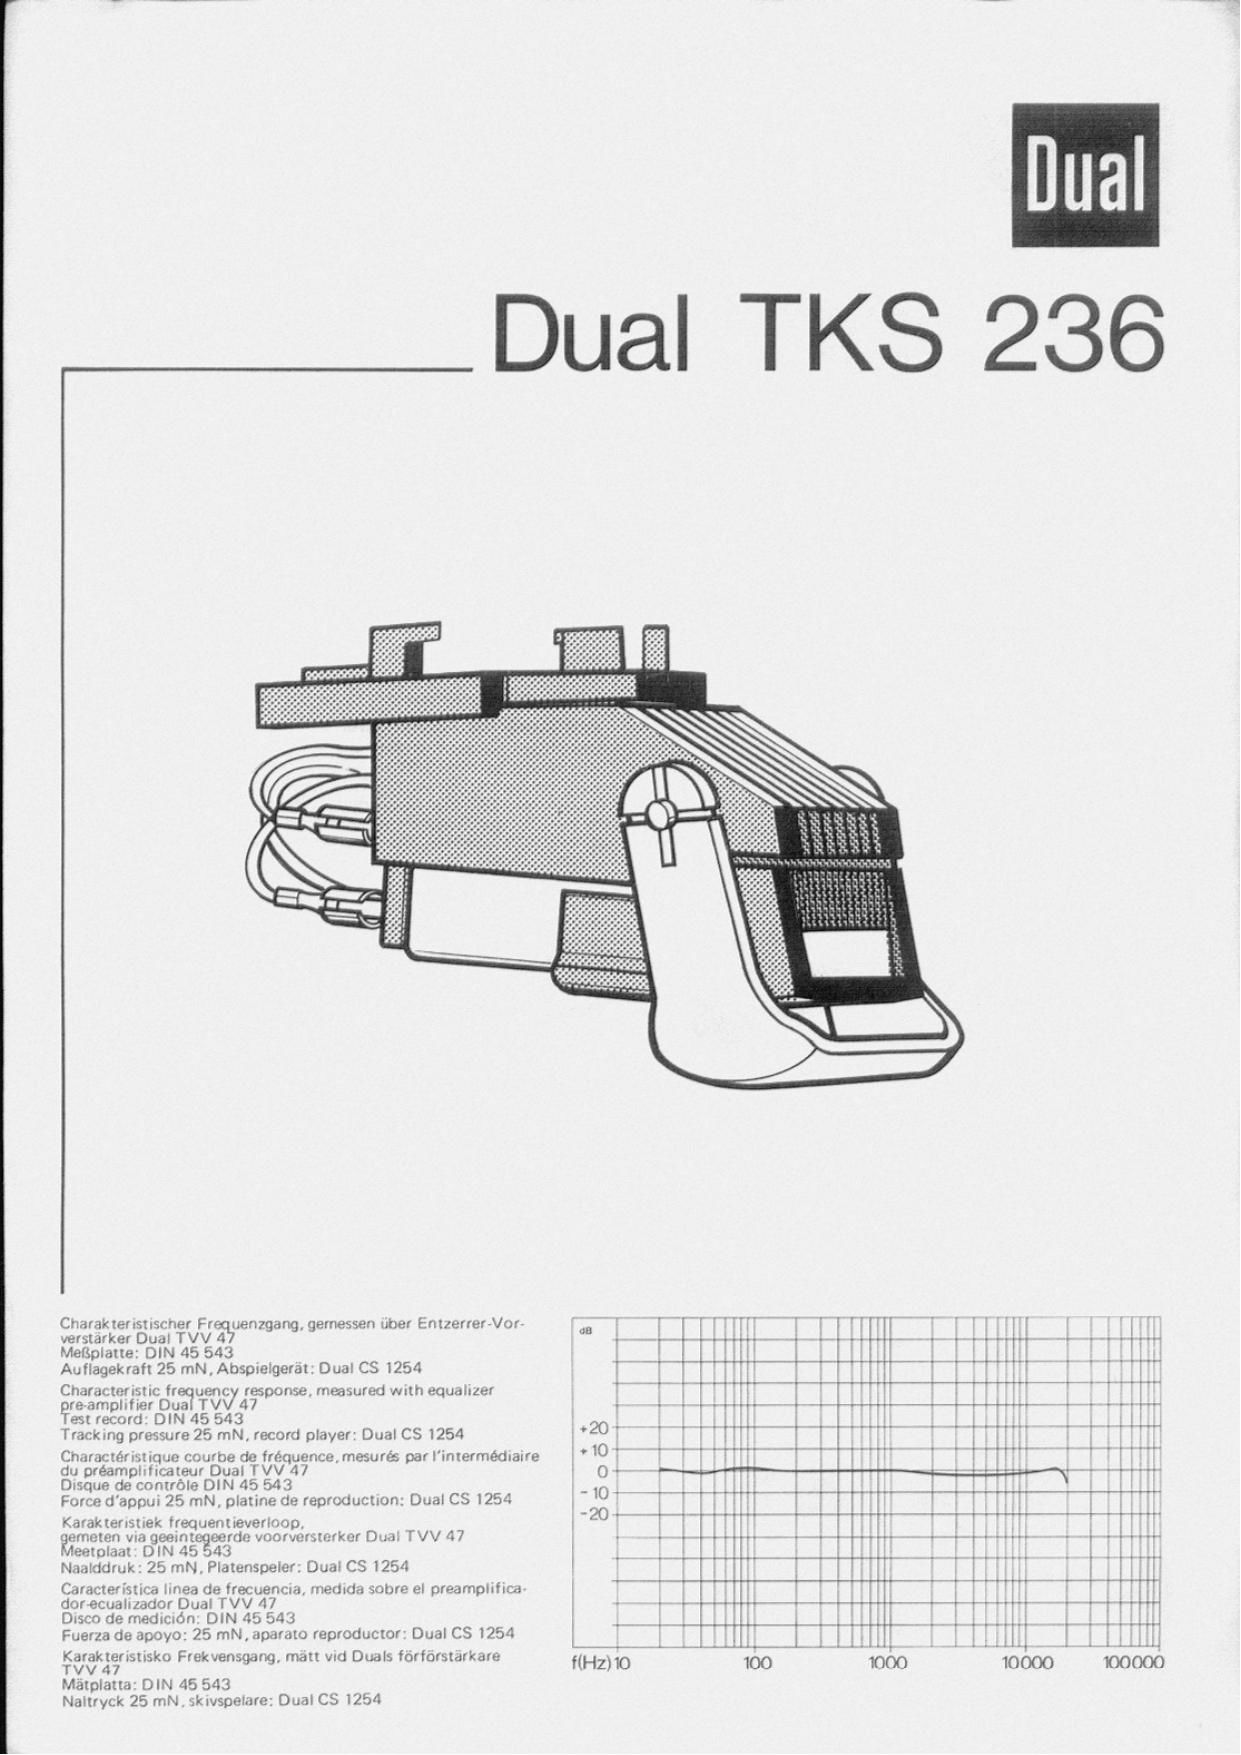 Dual TKS 236 Owners Manual